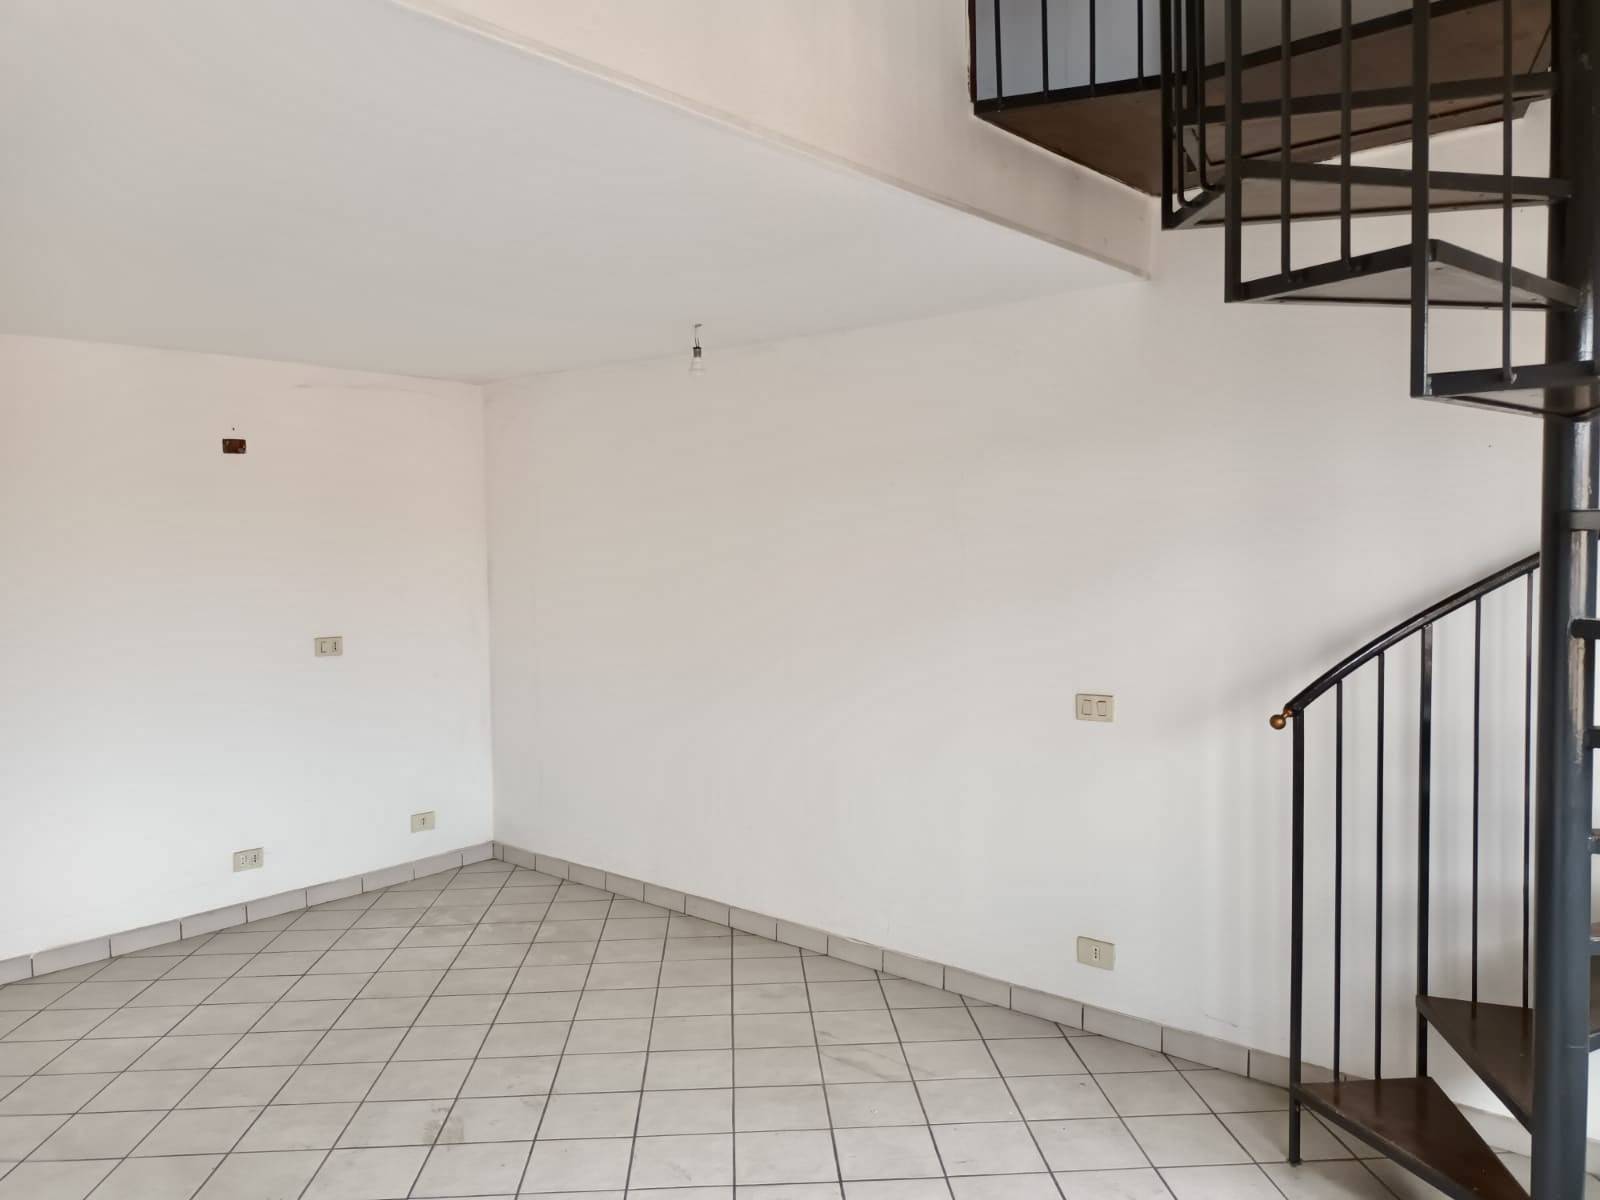 Appartamento in vendita a Chieve, 2 locali, prezzo € 35.000 | PortaleAgenzieImmobiliari.it